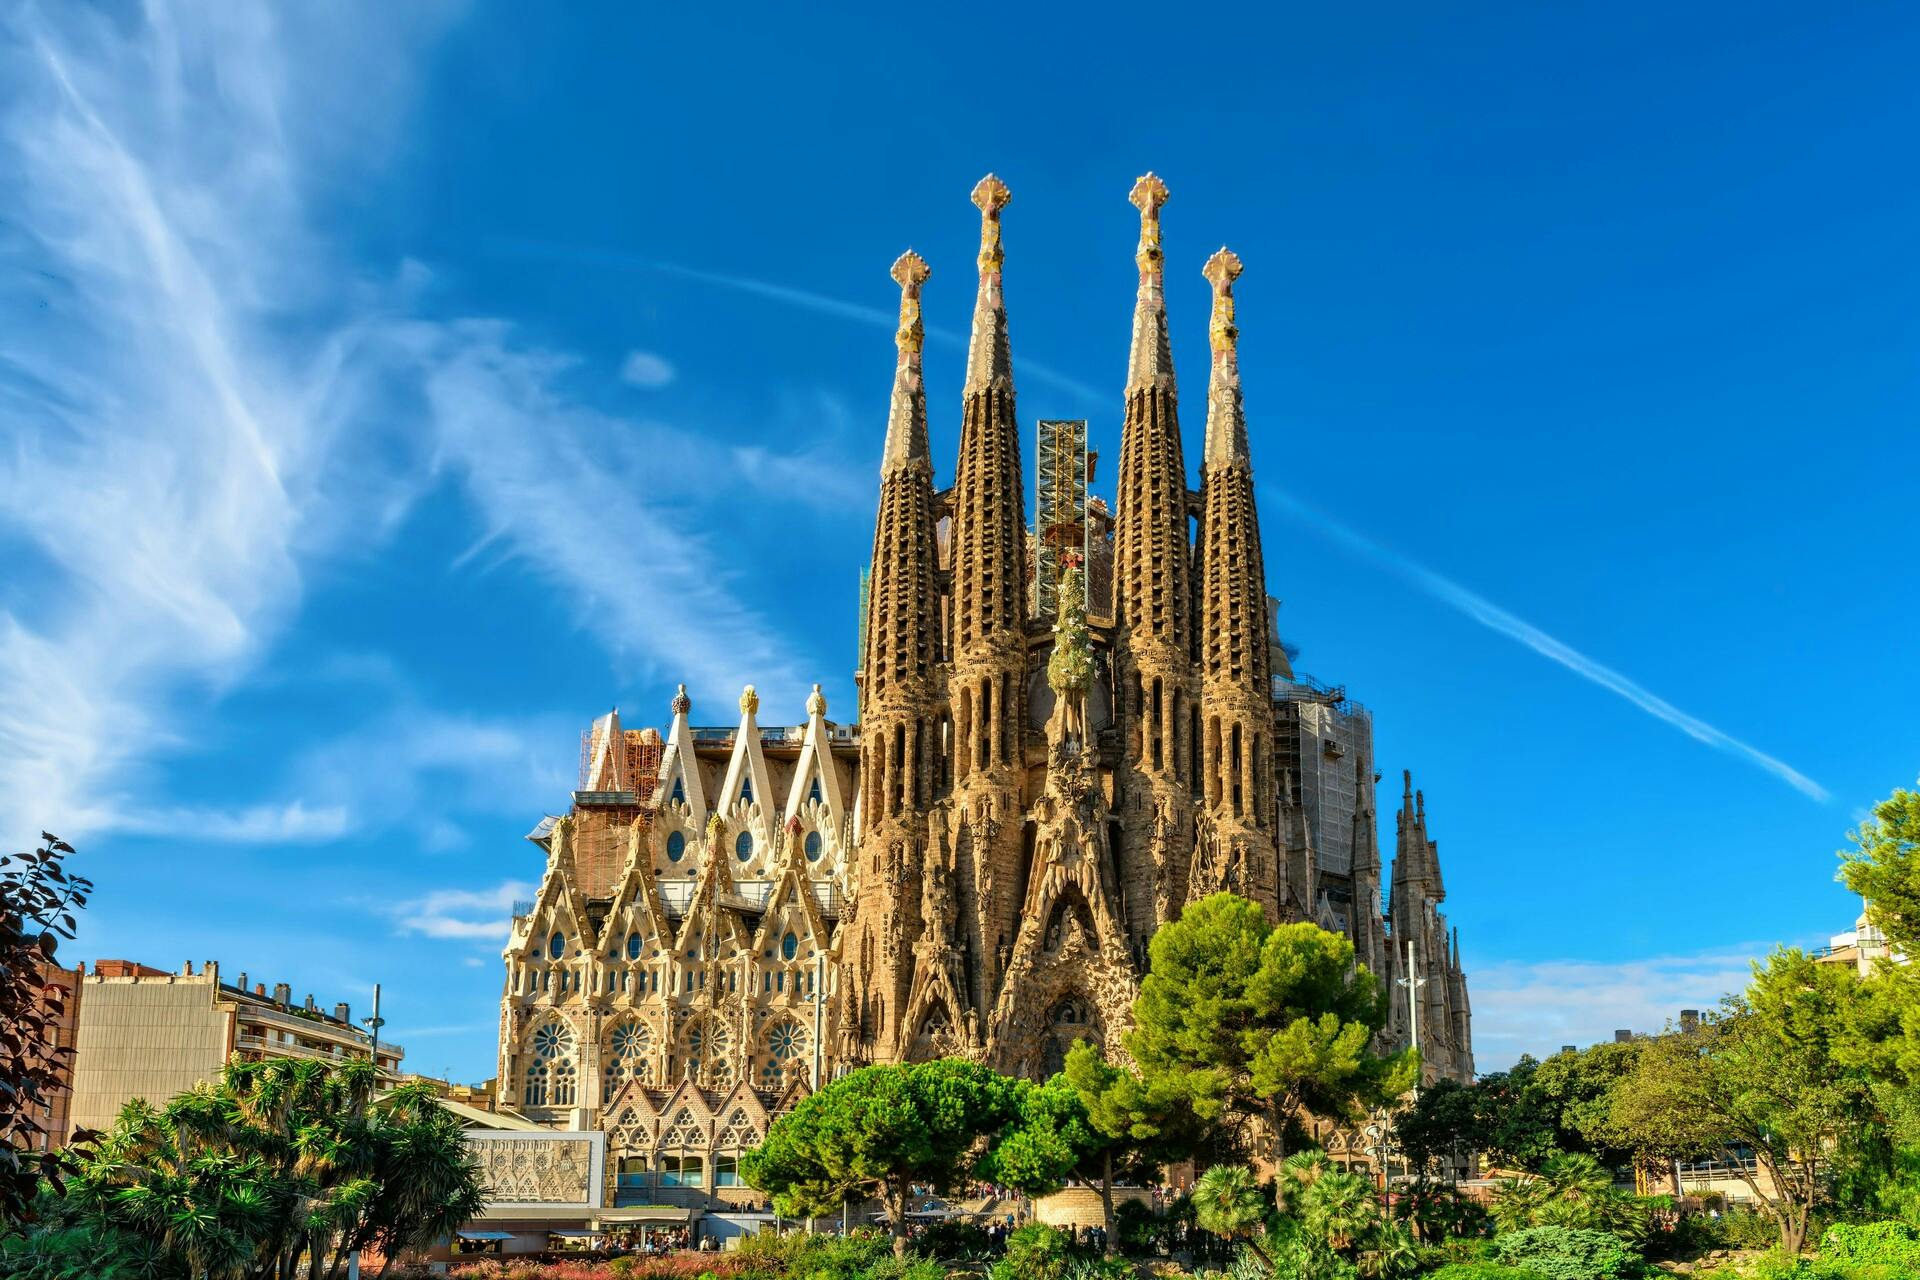 Selbstgeführte Audiotour durch die Sagrada Família